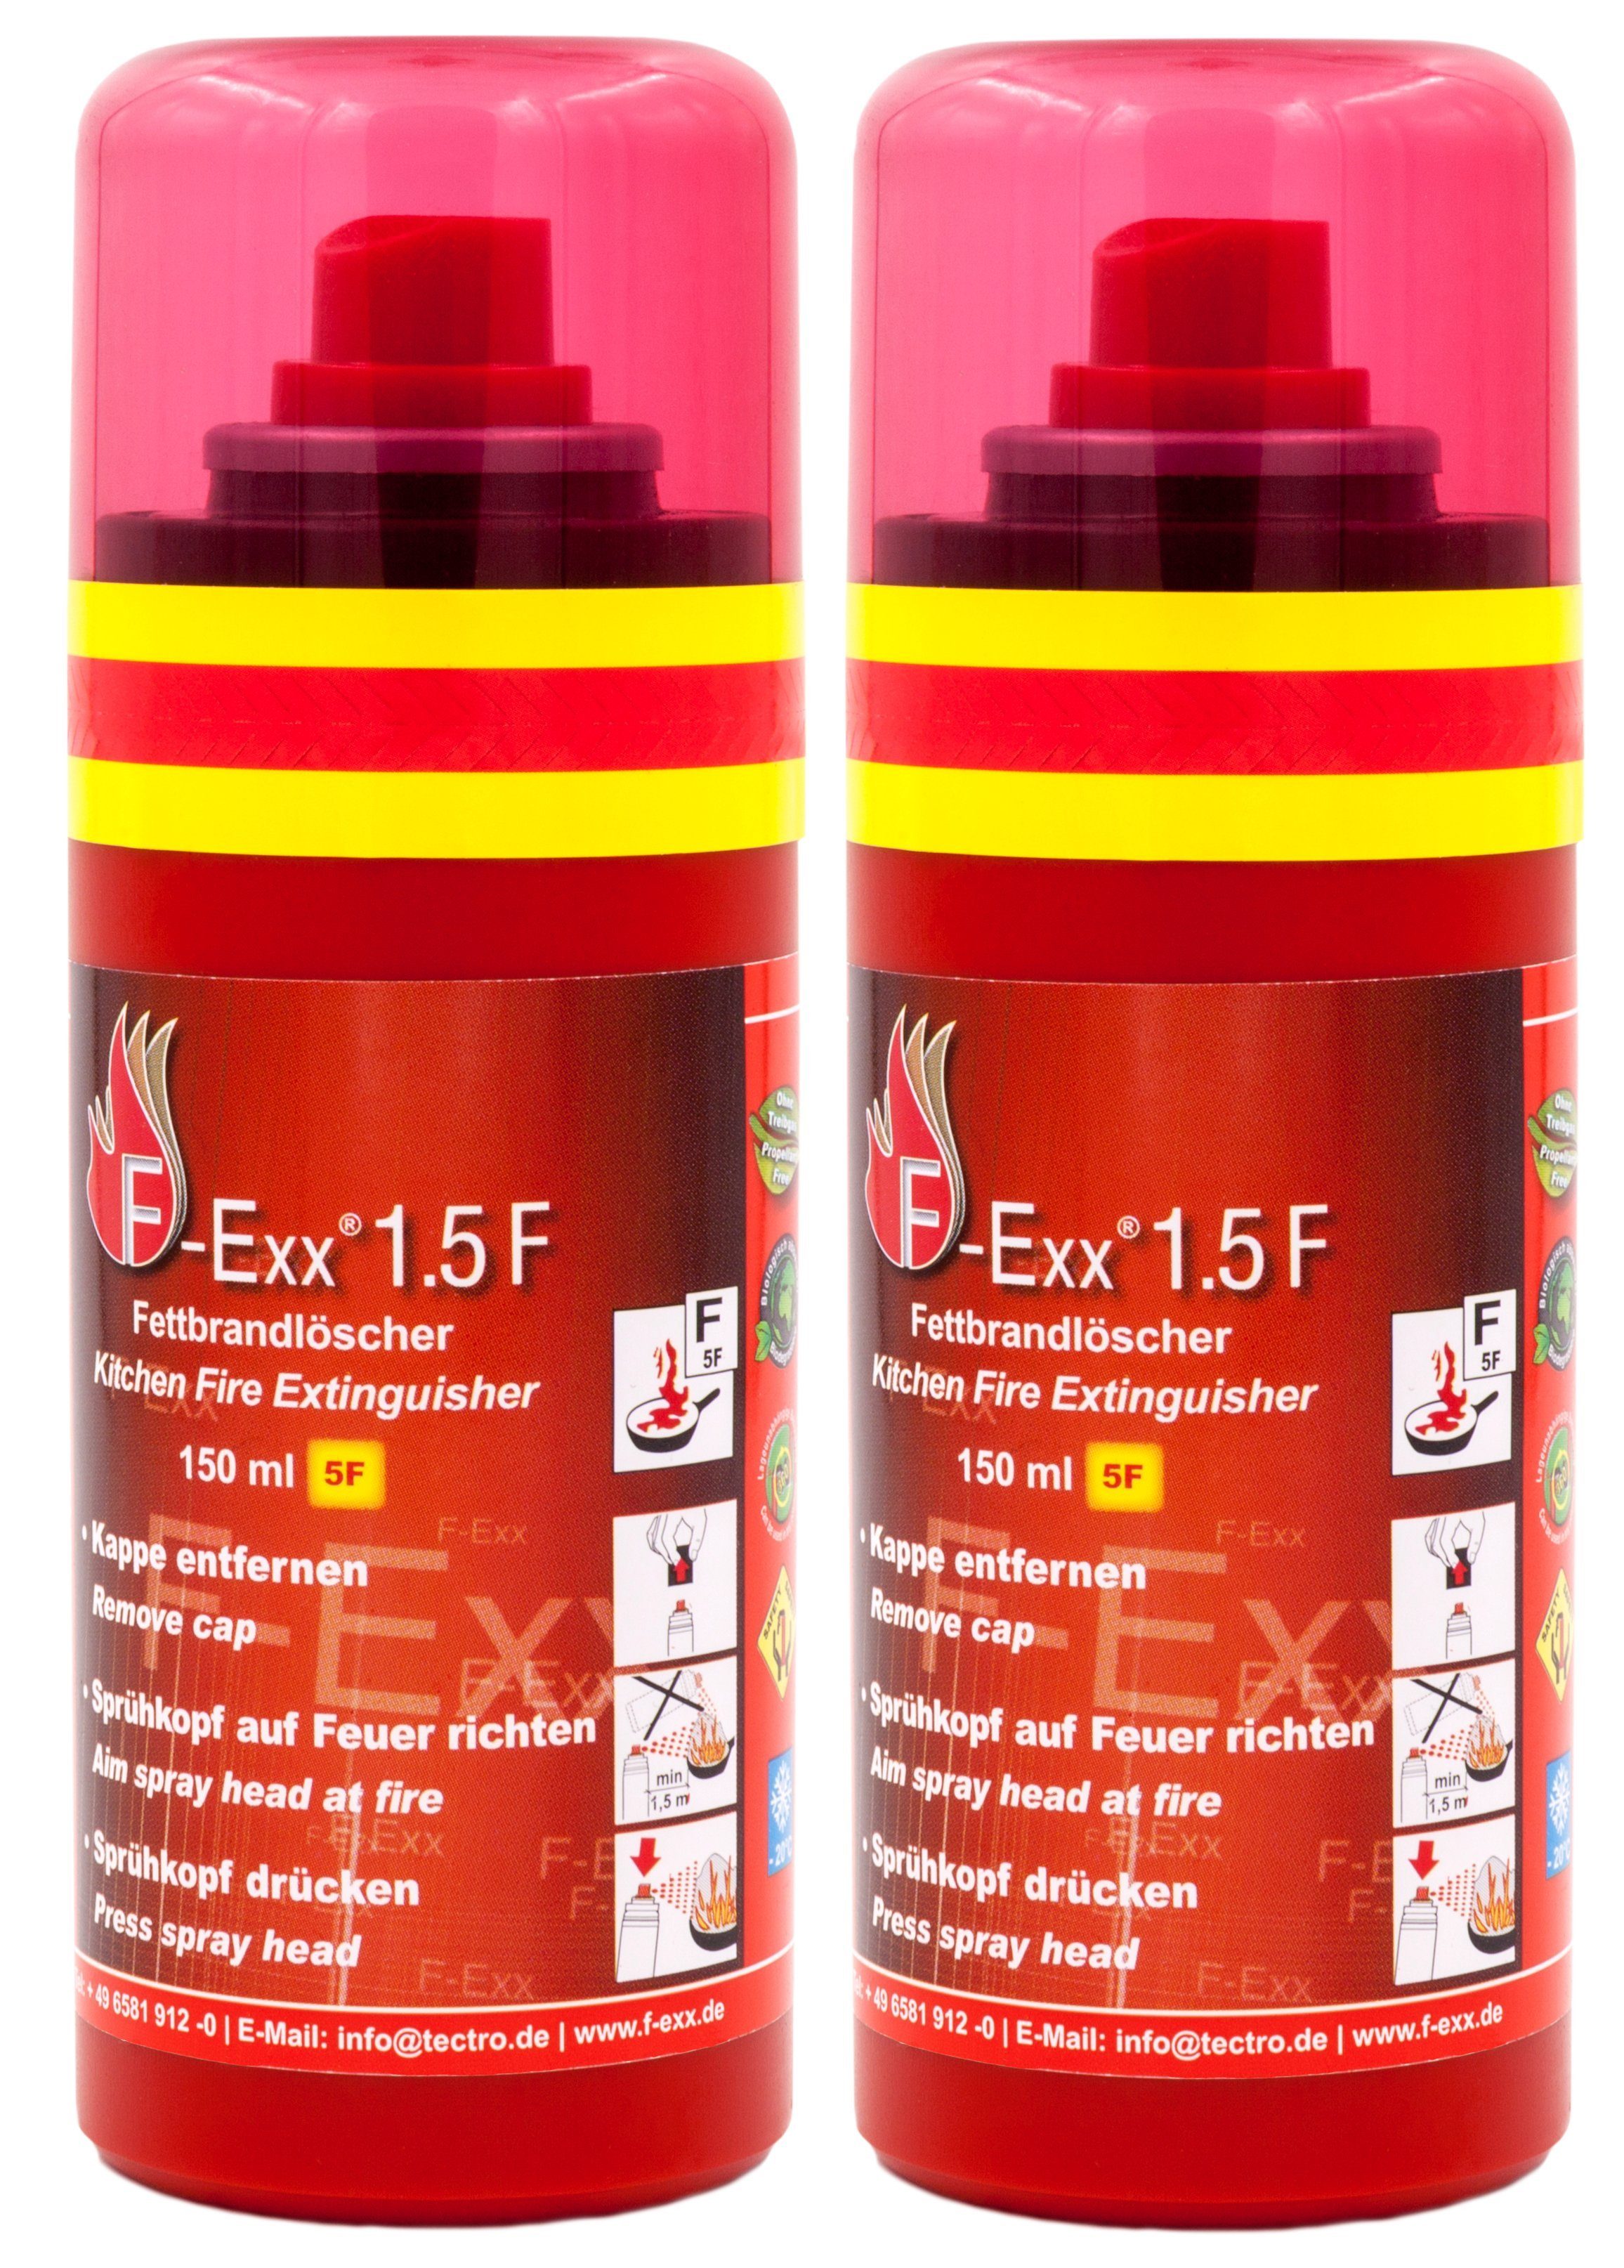 F-Exx Feuerlöschspray Für sicheres Kochen - Küche, Grill und Zuhause - 1.5 F, Elastomer-Kraftkörper (kein Treibgas), Schaum, (2-St) Treibgasfrei